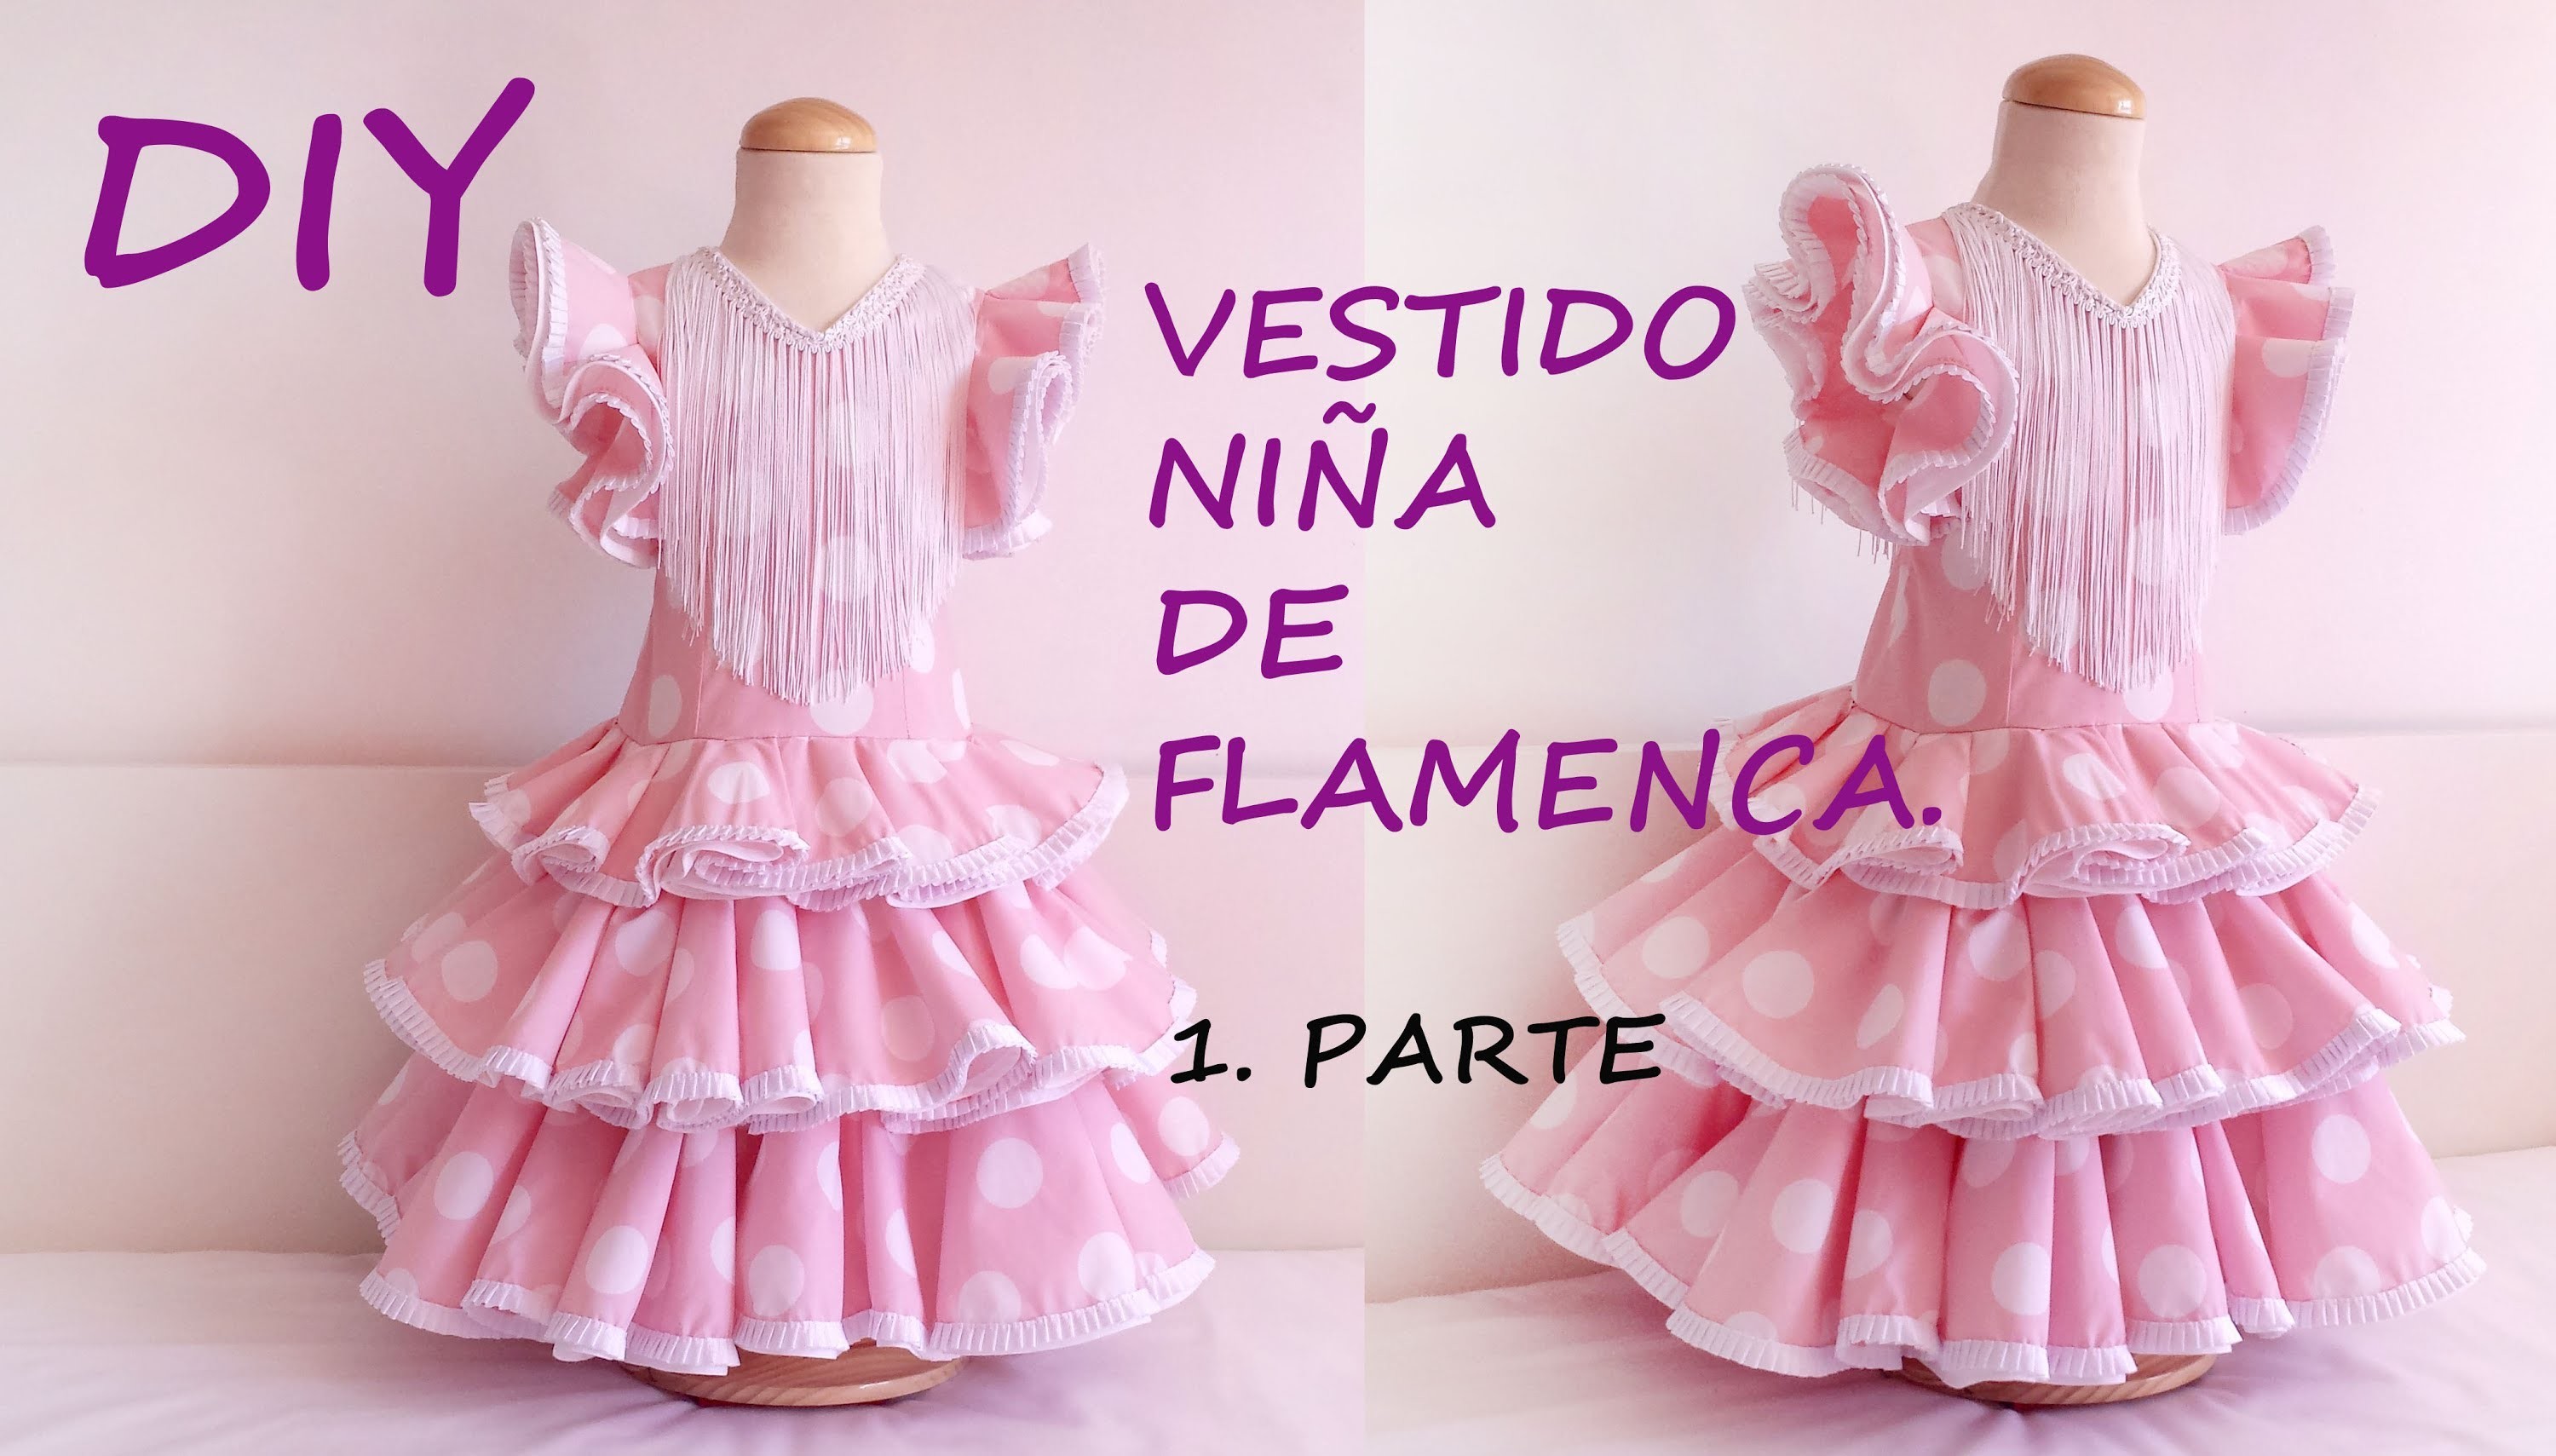 Vestido niña de flamenca: Como hacer un vestido flamenca de niña